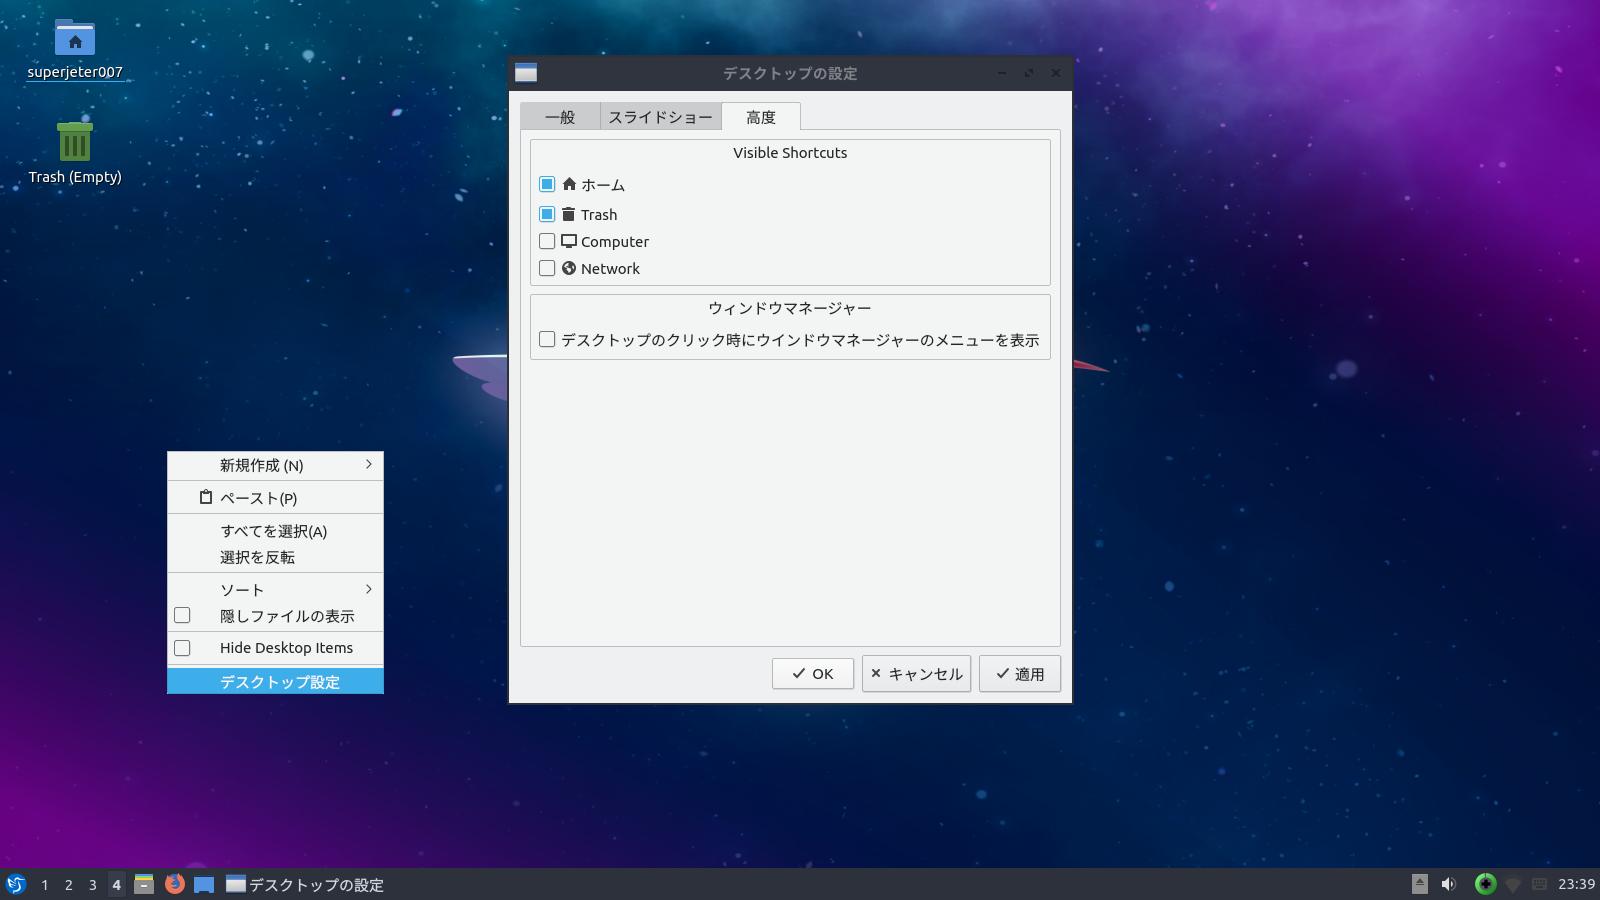 Lubuntu 19 04 Disco Dingo 最新lubuntu Lxqtデスクトップ環境の出来具合はいかに